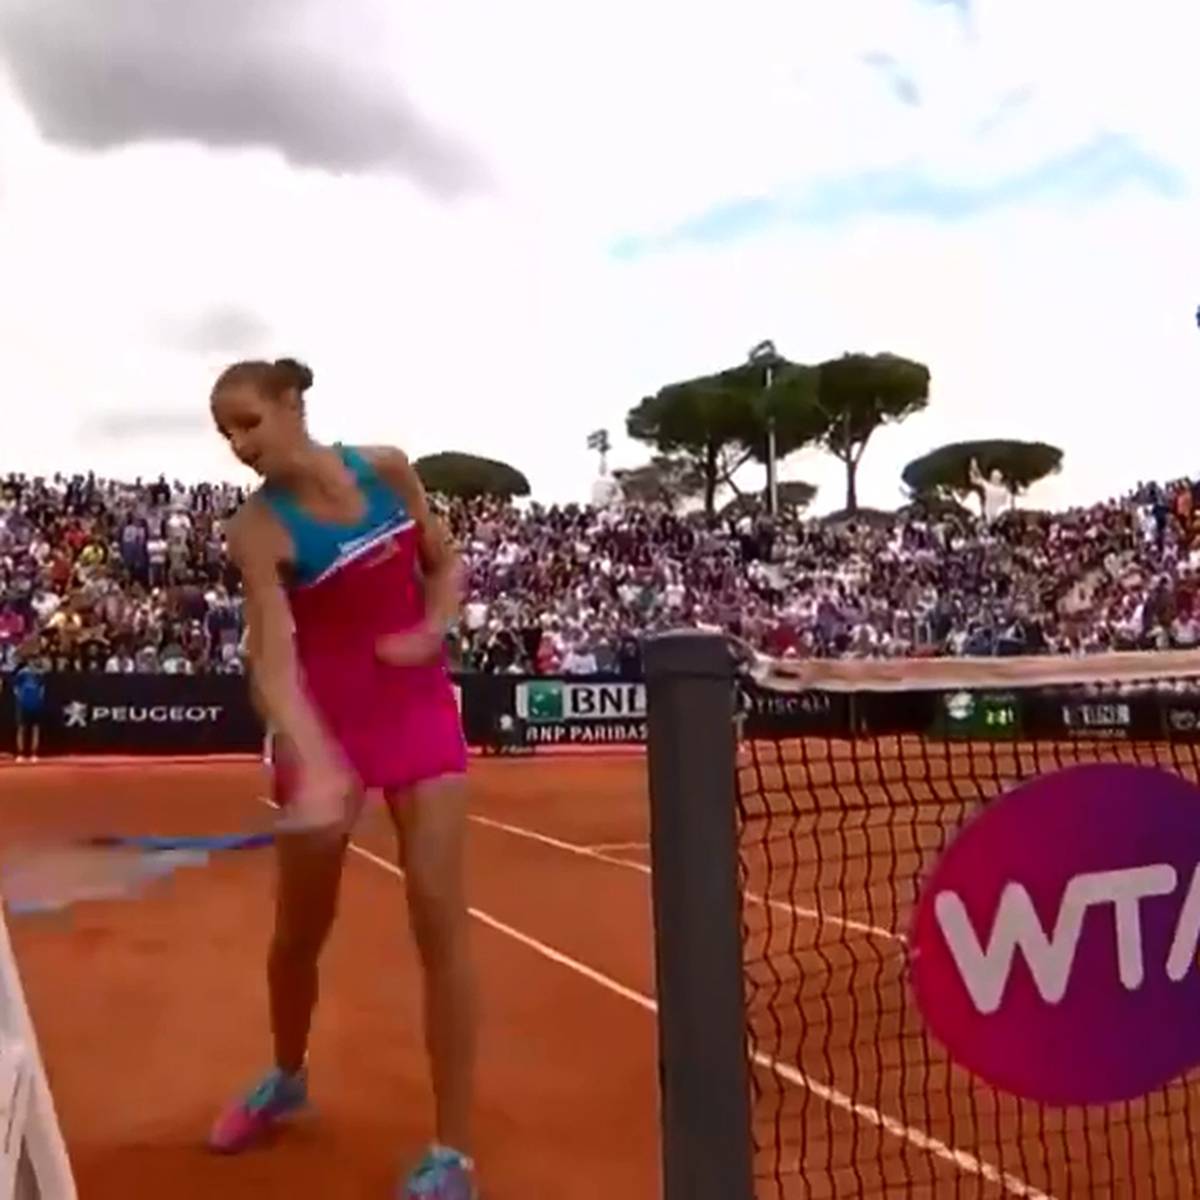 Tennis Ausraster von Karolina Pliskova bei WTA-Turnier in Rom